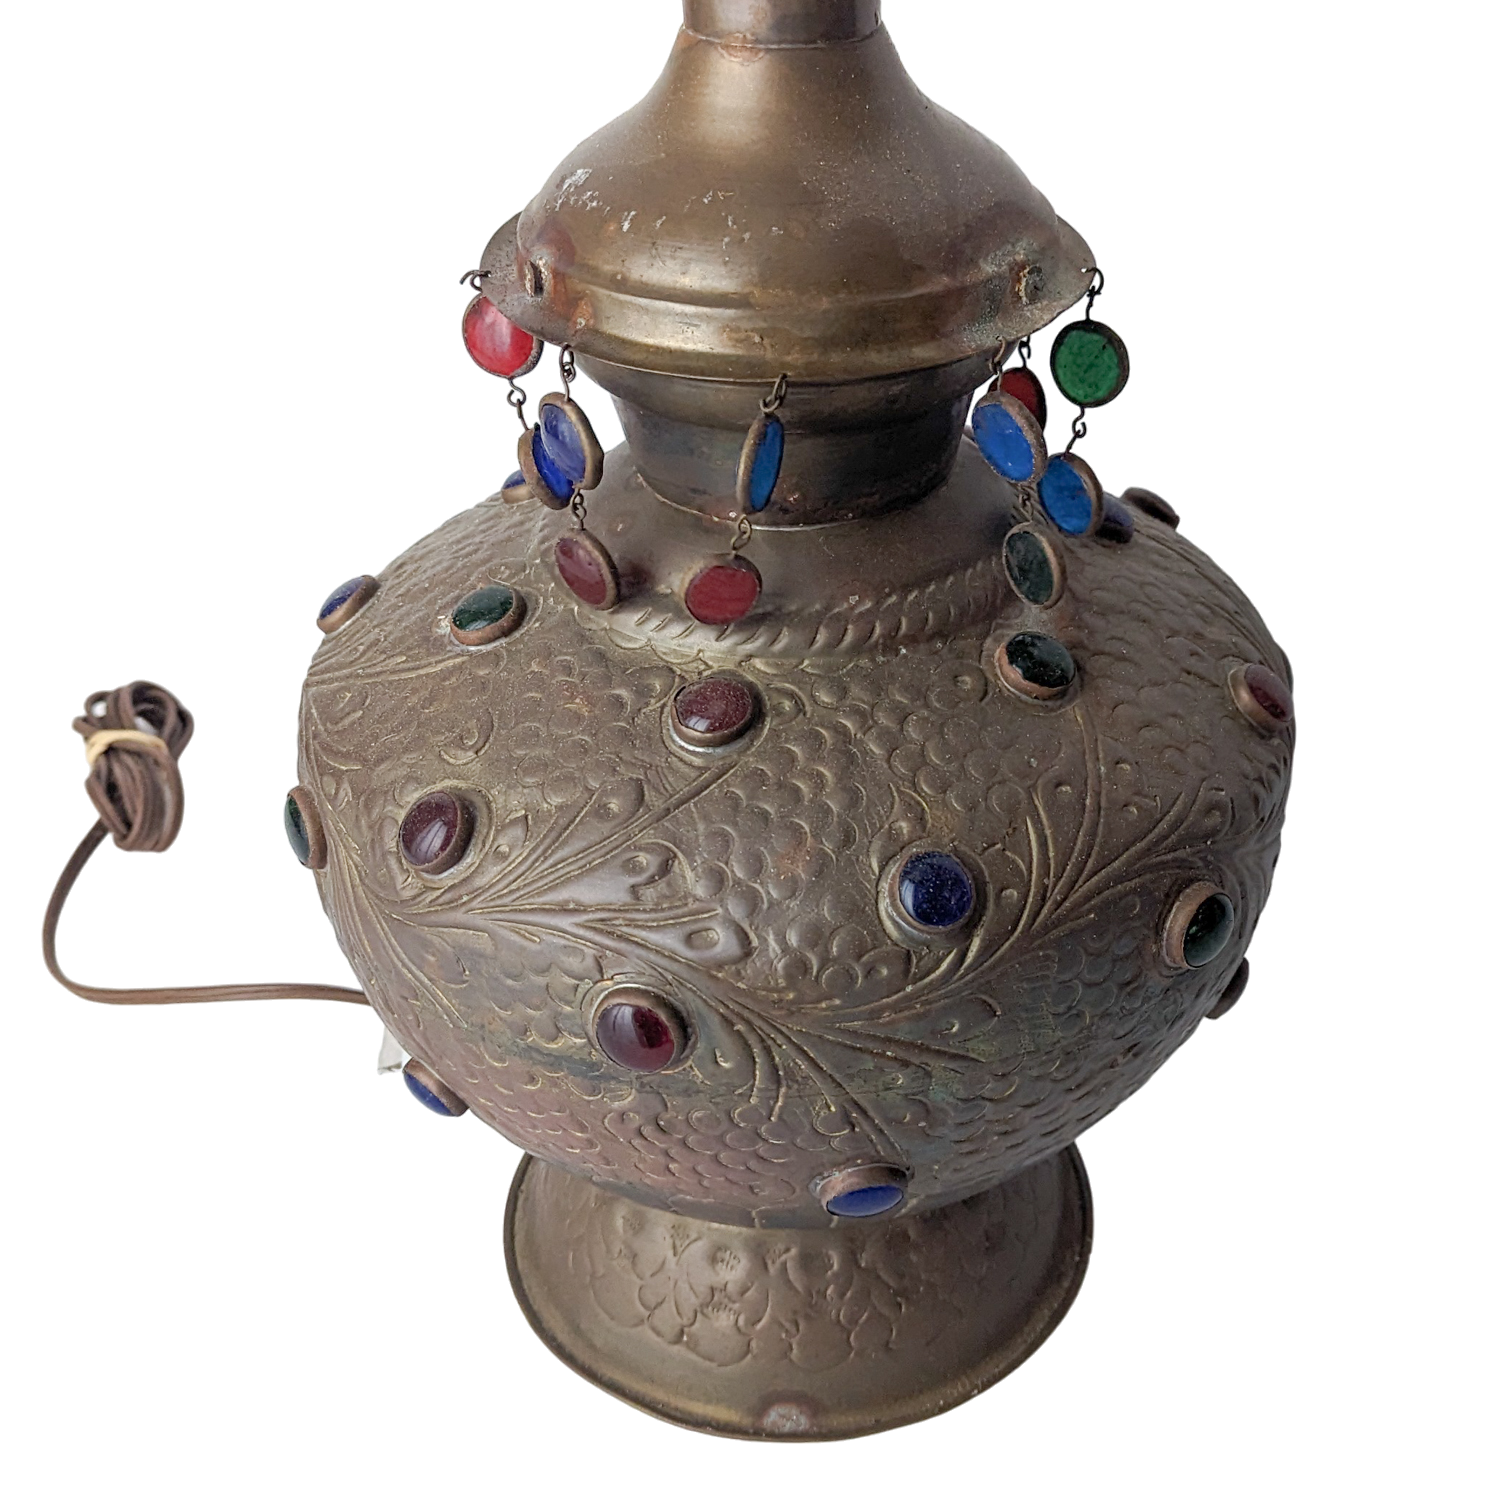 Antique Art Nouveau Brass Jeweled Table Lamp